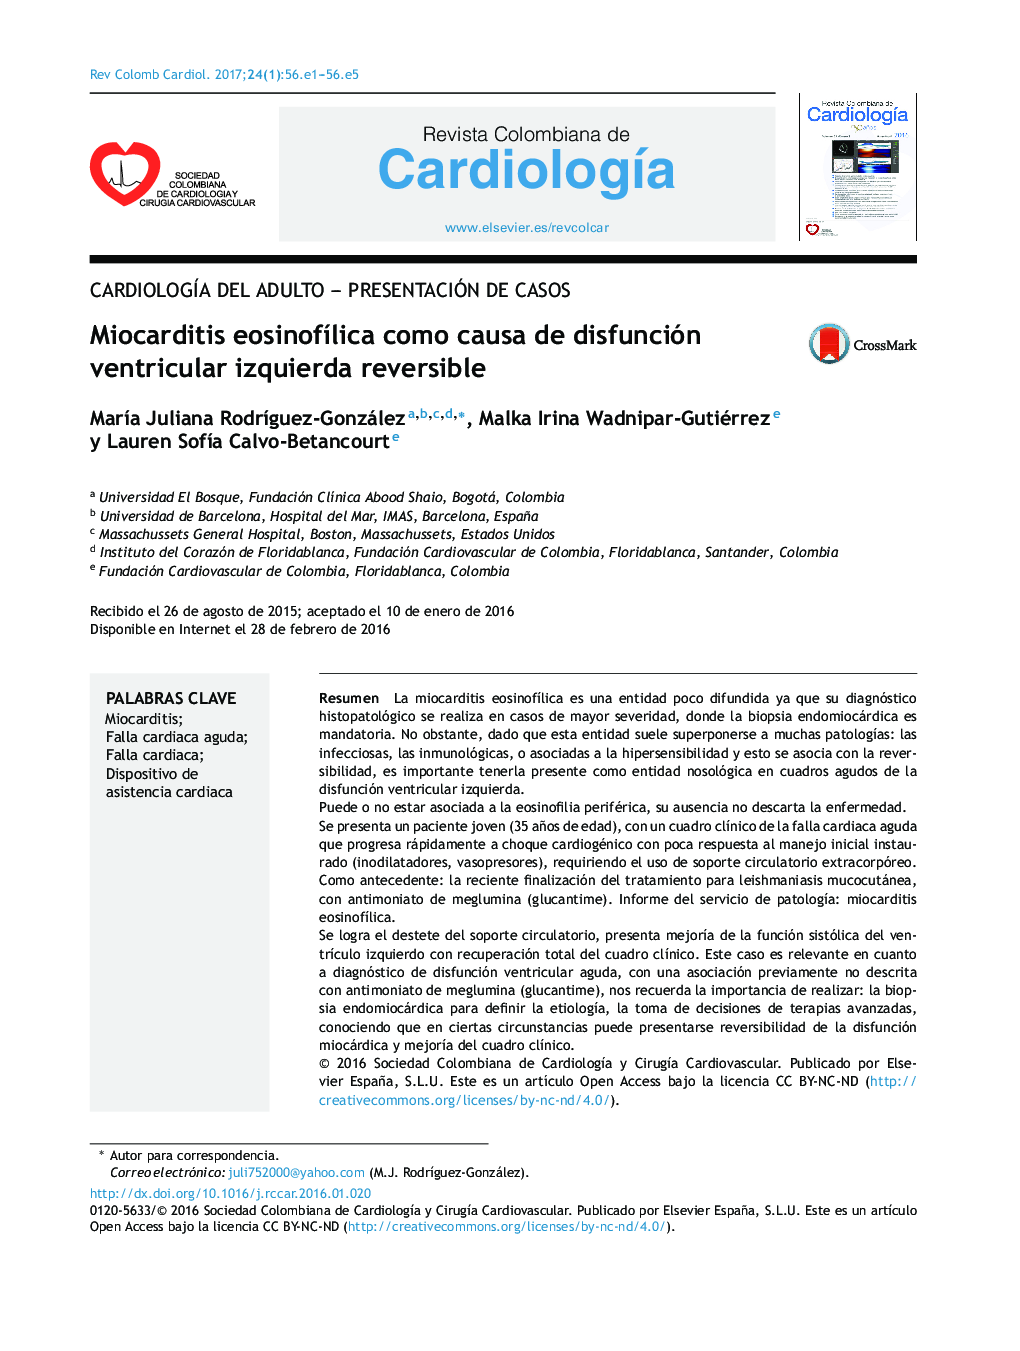 CardiologÃ­a del adulto - Presentación de casosMiocarditis eosinofÃ­lica como causa de disfunción ventricular izquierda reversibleEosinophilic myocarditis as a cause of reversible left ventricular dysfunction